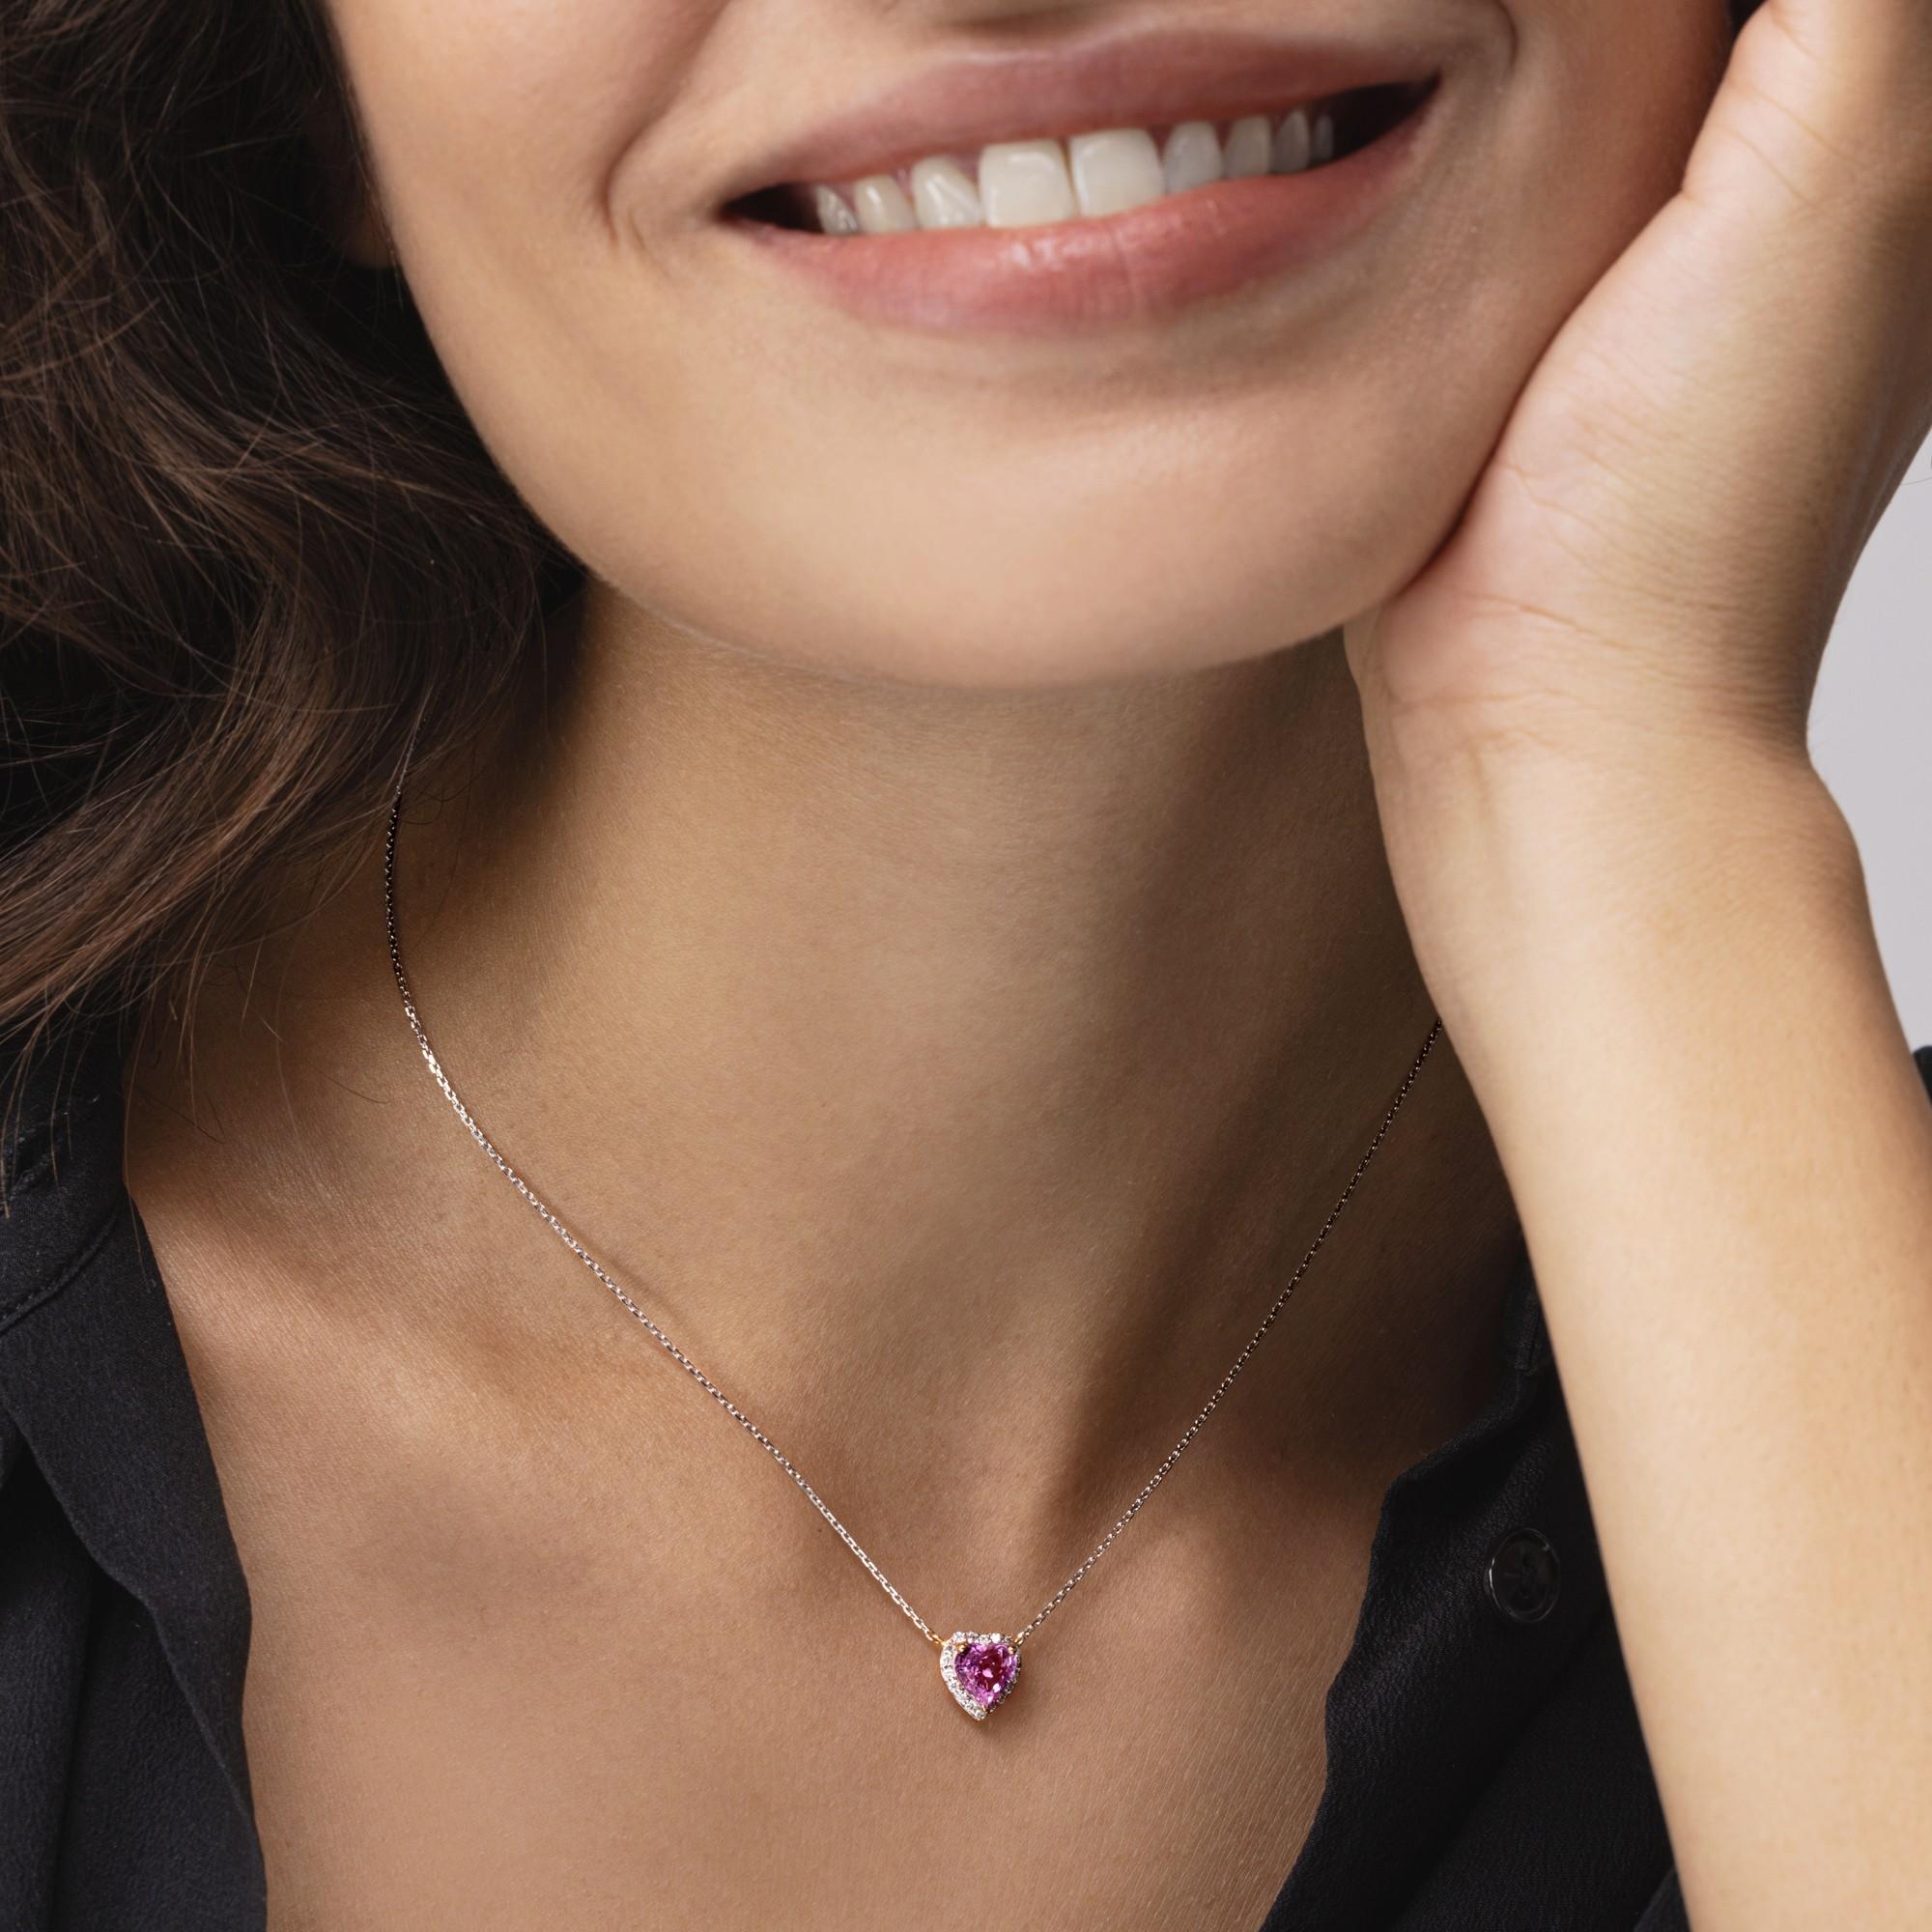 Alex Jona Design-Kollektion, handgefertigt in Italien, 18 Karat Roségold Anhänger Halskette mit einem rosa Saphir im Herzschliff mit einem Gesamtgewicht von 1,11 Karat, umgeben von 0,13 Karat weißen Diamanten, F-G Farbe, VS Reinheit.
Die Juwelen von